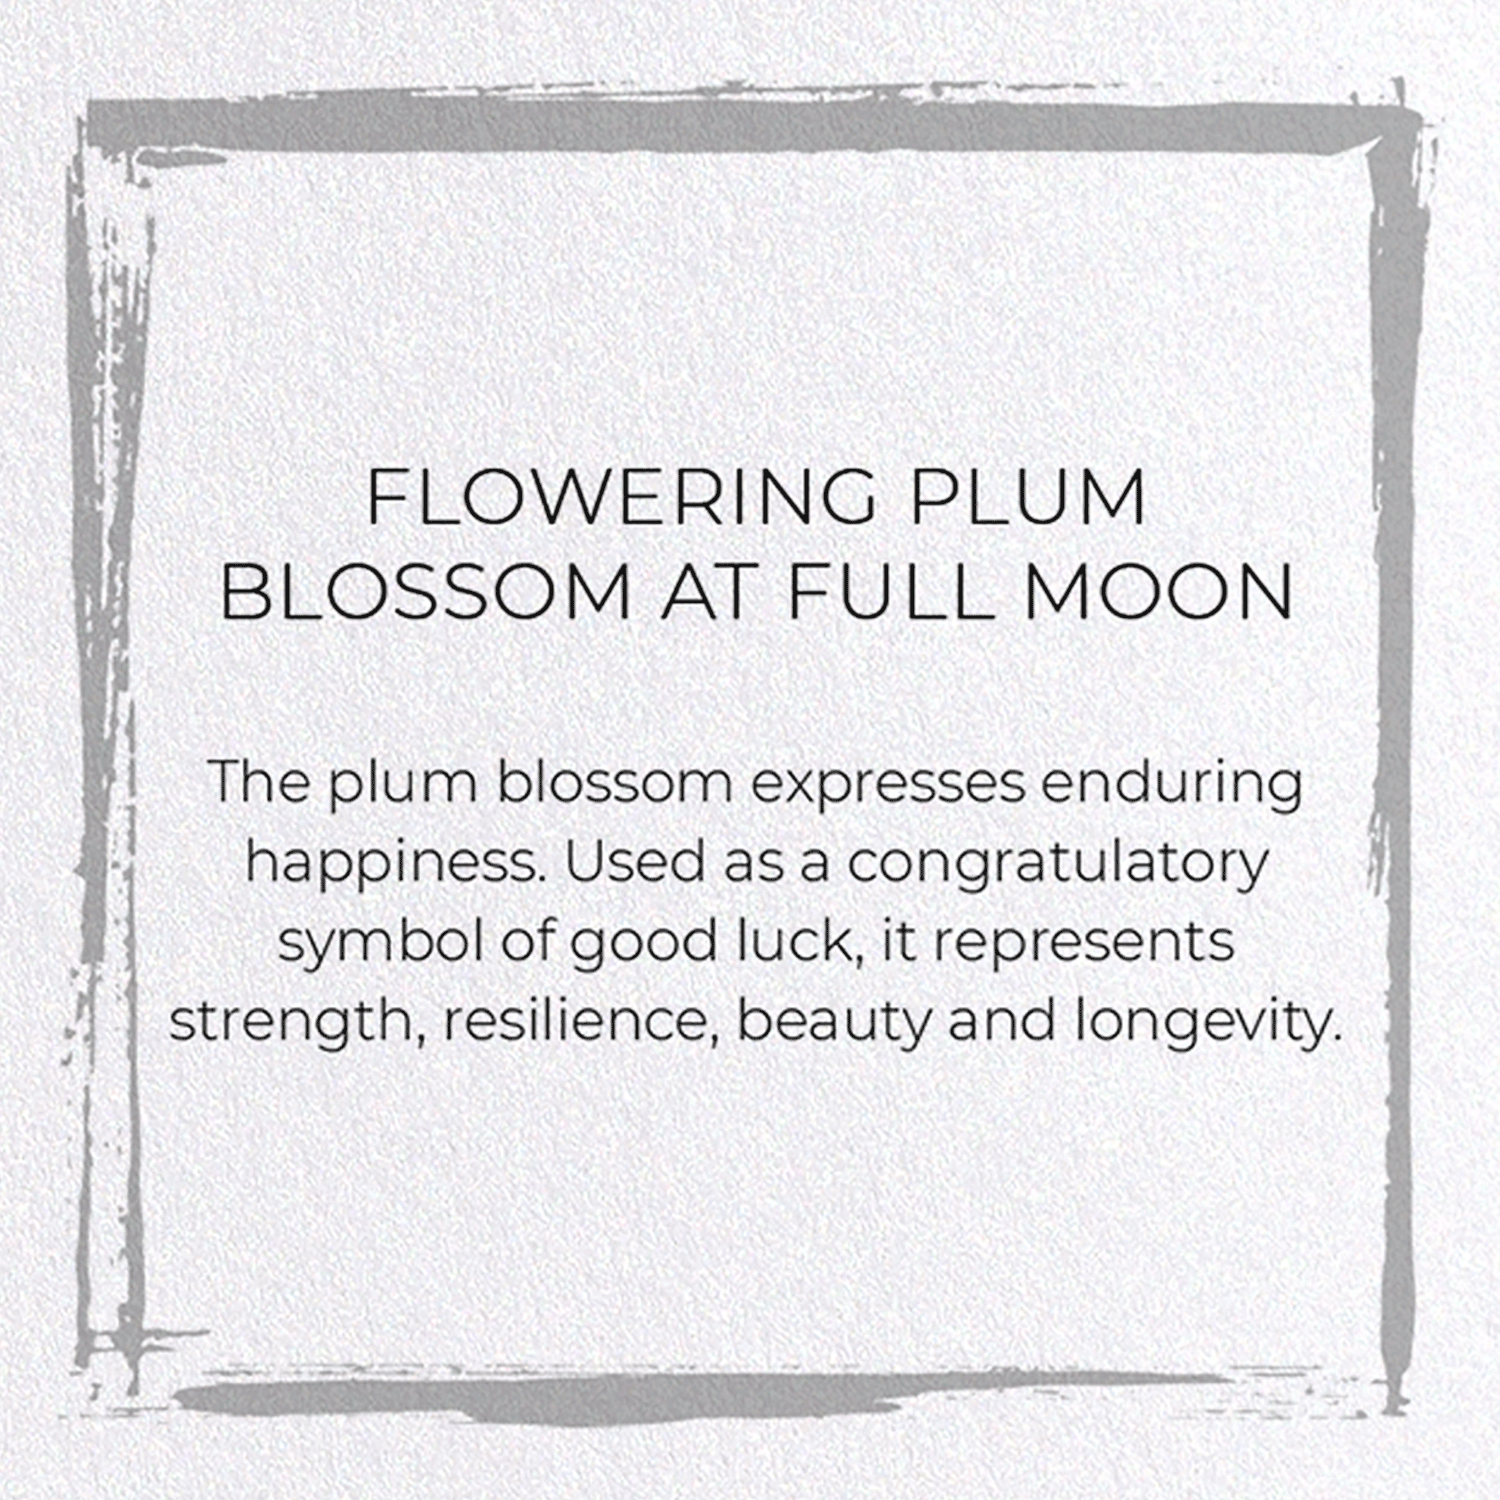 FLOWERING PLUM BLOSSOM AT FULL MOON